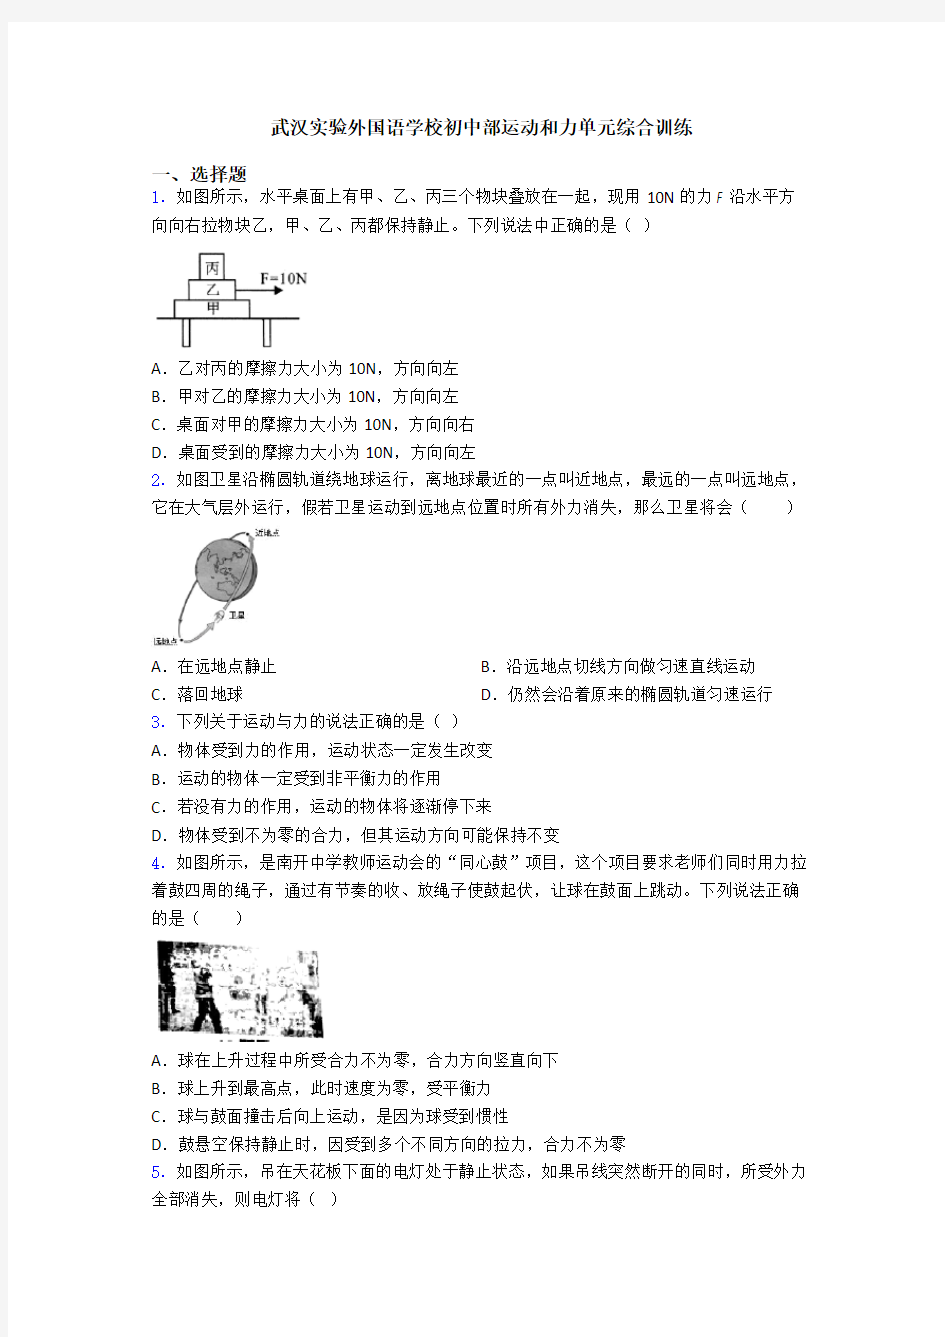 武汉实验外国语学校初中部运动和力单元综合训练